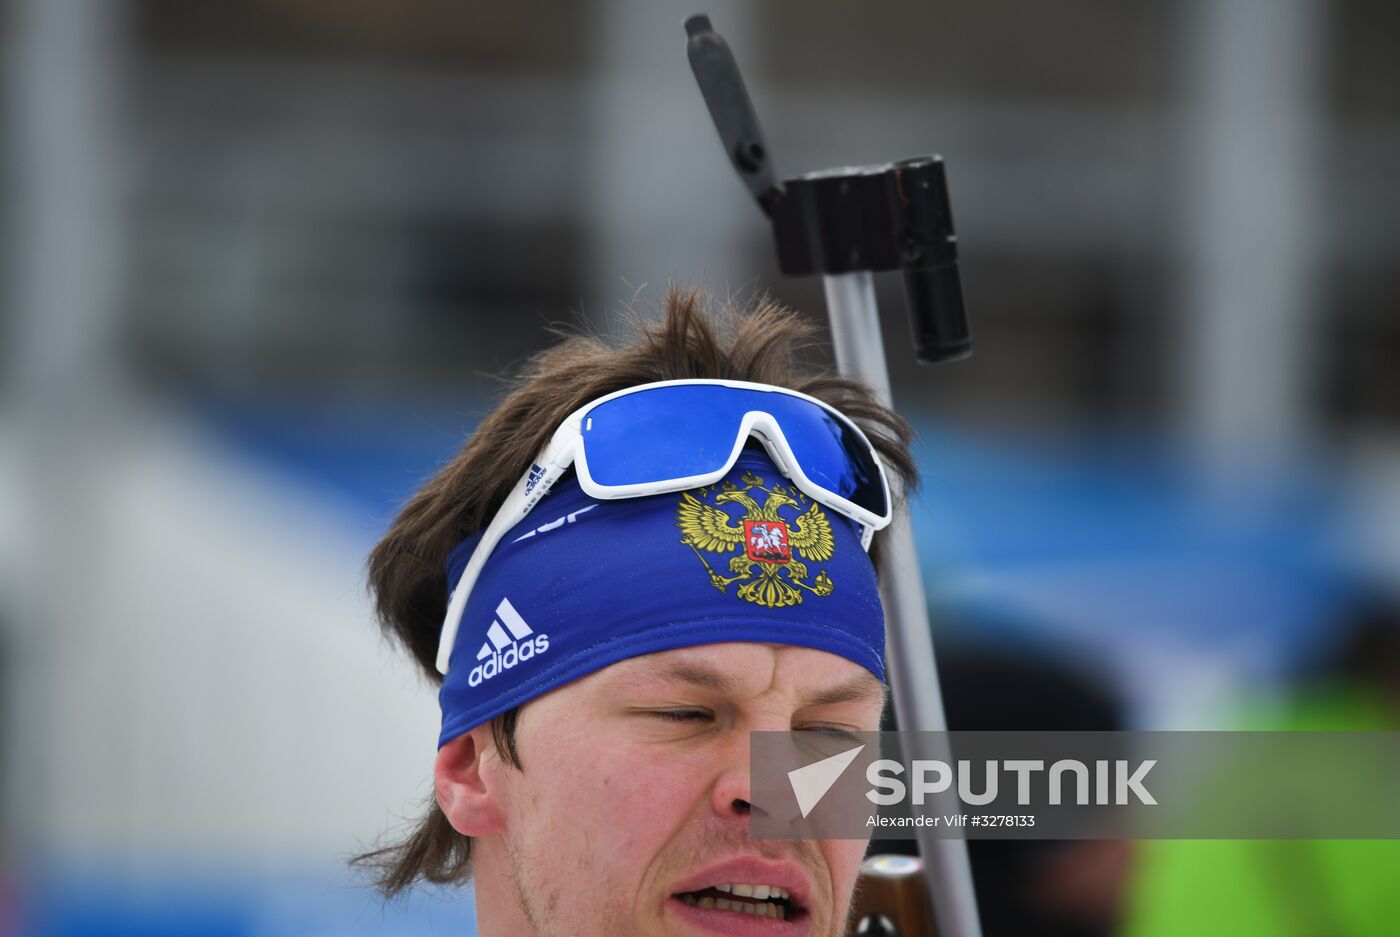 IBU World Cup Biathlon 6. Men's pursuit